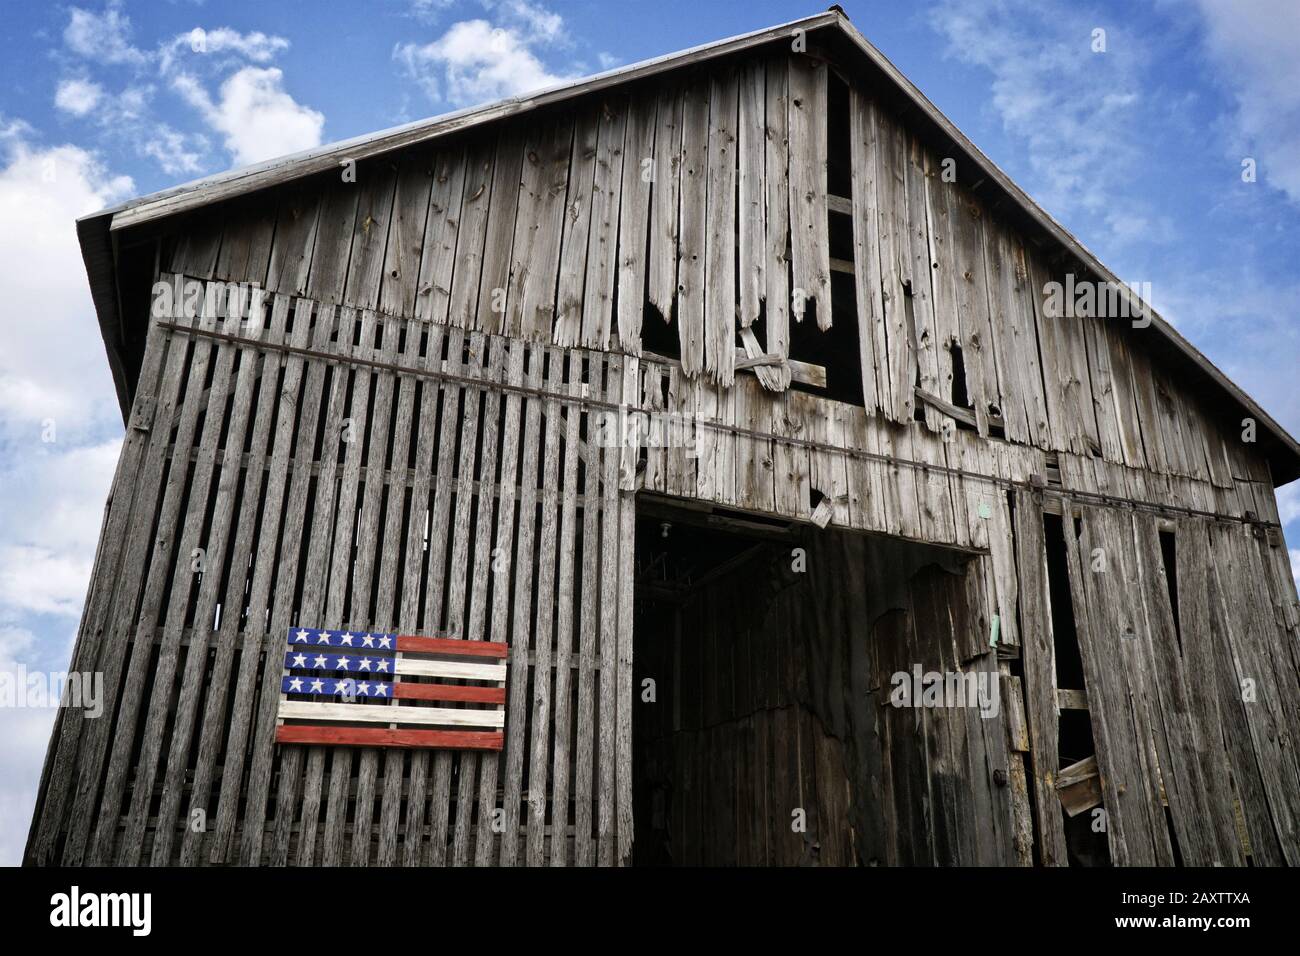 Tiro ad angolo basso di un vecchio fienile di legno con un bandiera americana in legno dipinto Foto Stock